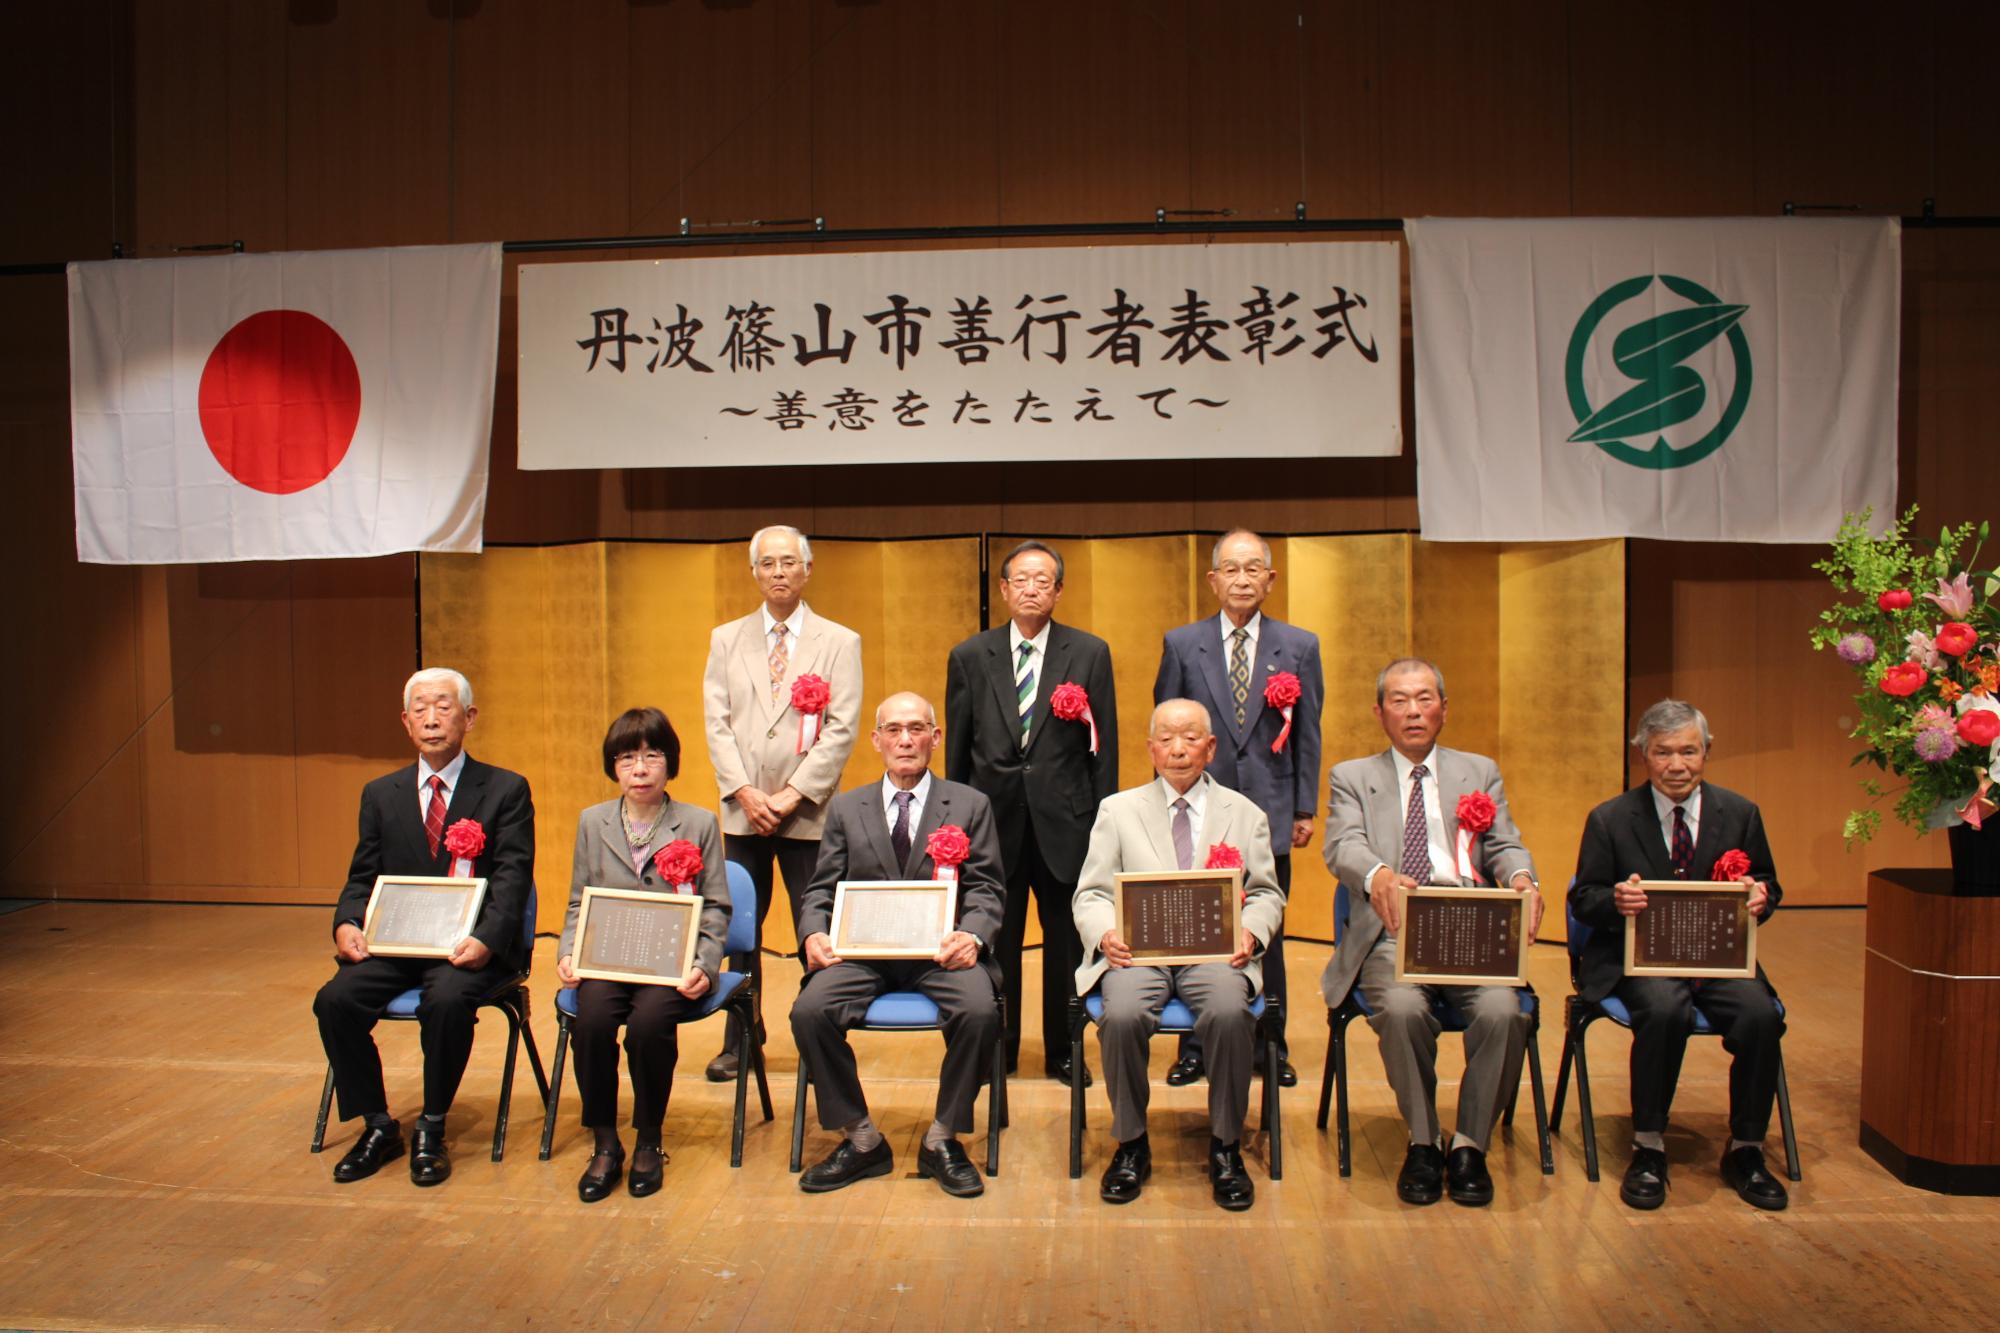 市の善行者表彰式で、前列に表彰盾を持った受賞者の方たちが椅子に座っていて、後列にも受賞者の方3名が立っている。